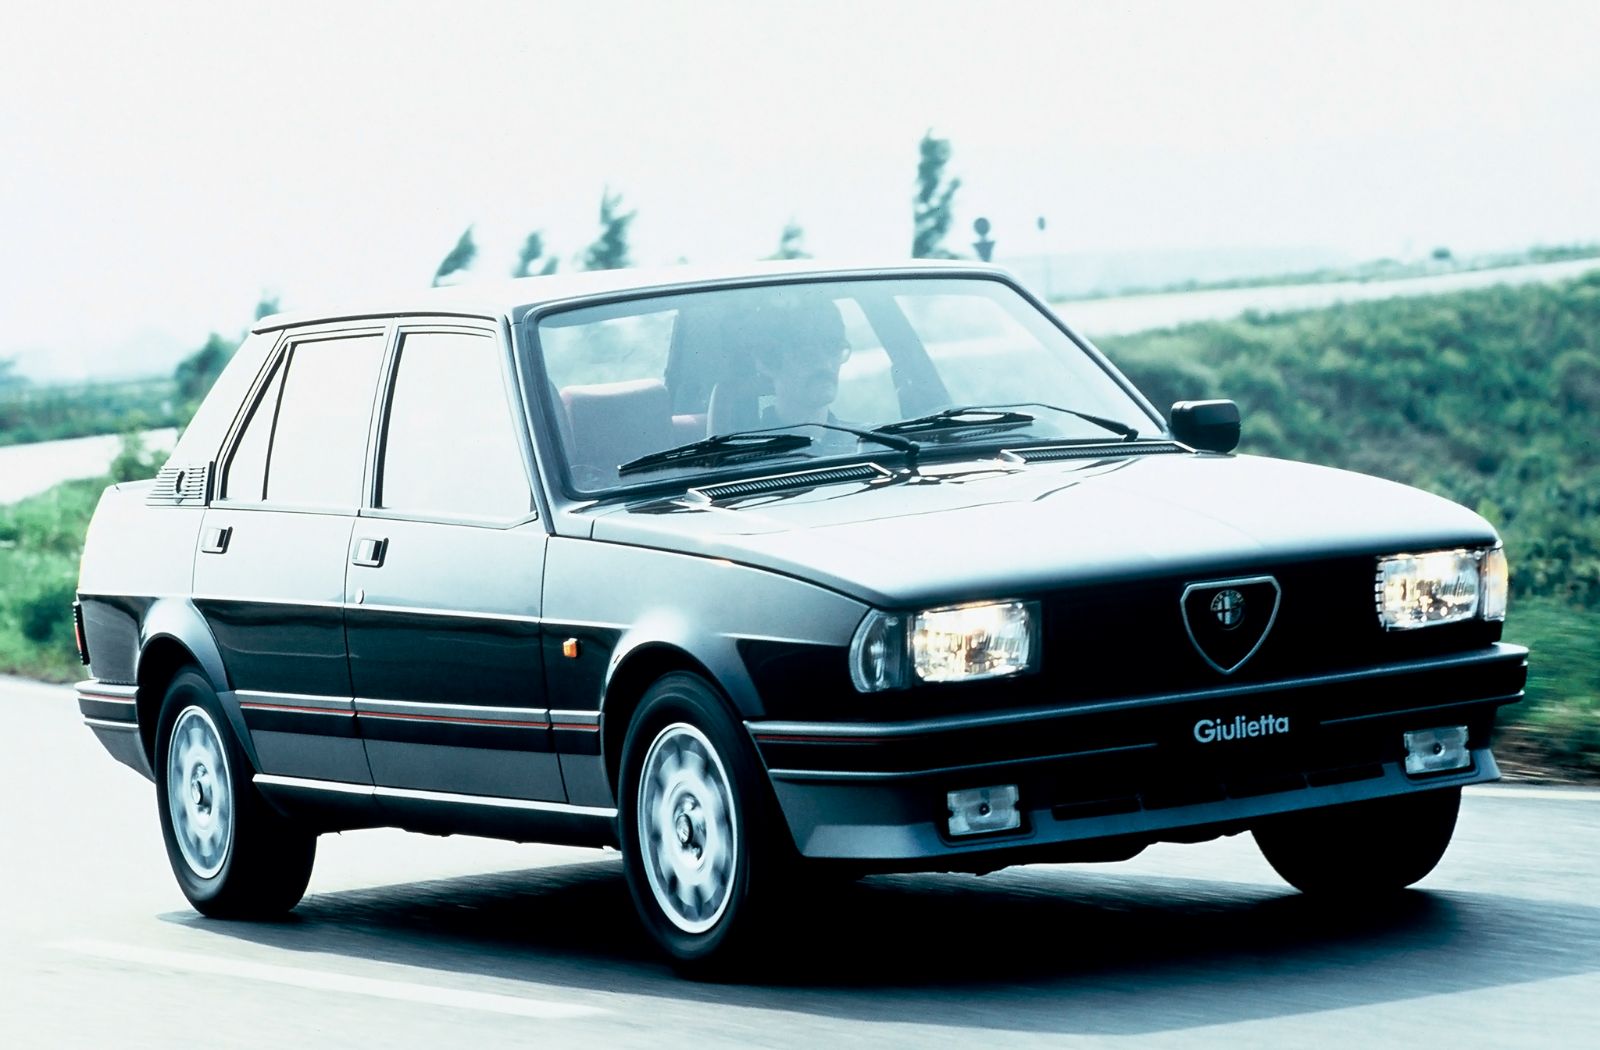 1984 Alfa Romeo Giulietta Turbodelta